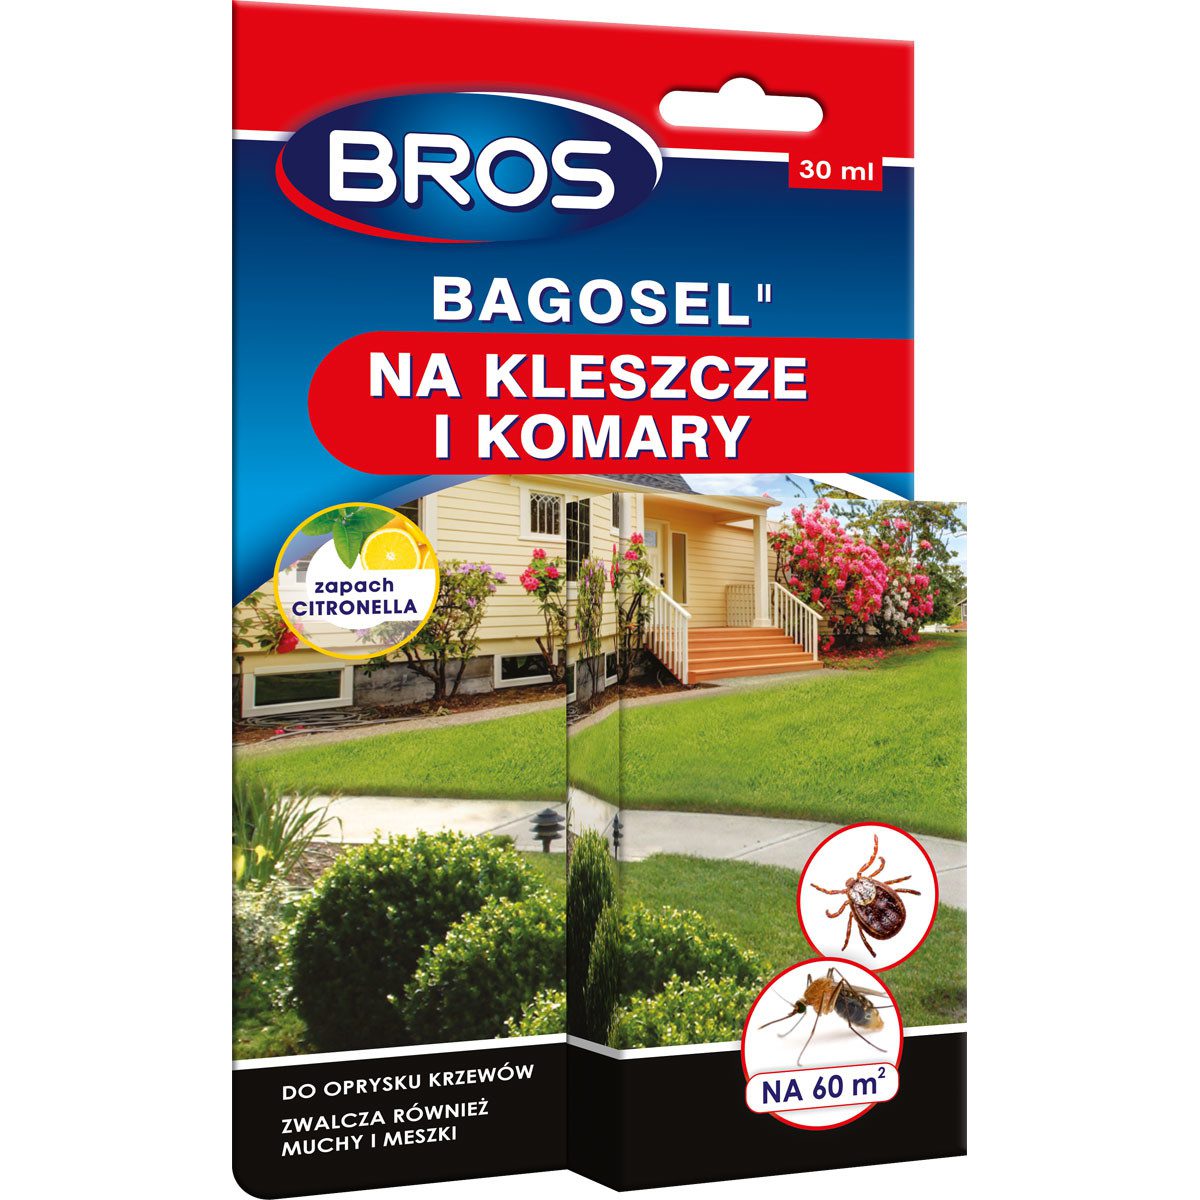 Bros Bagosel 100EC – preparat do oprysku ogrodu przeciw komarom i kleszczom